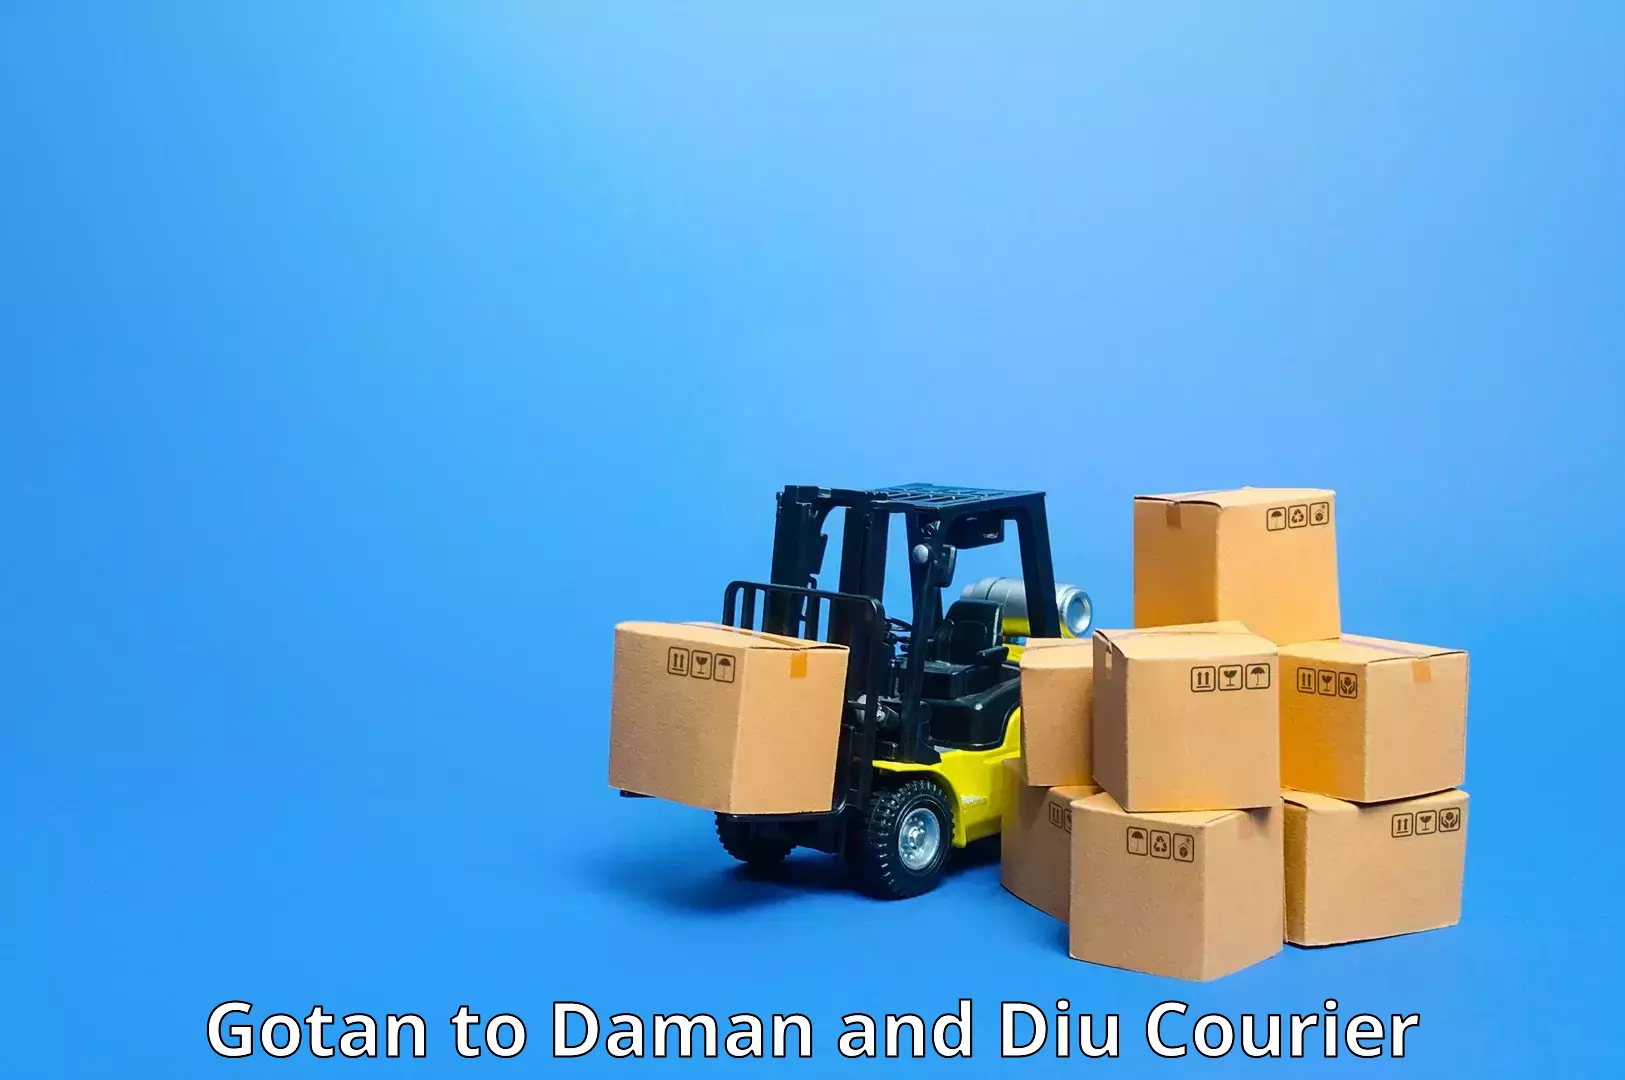 High-capacity parcel service Gotan to Daman and Diu